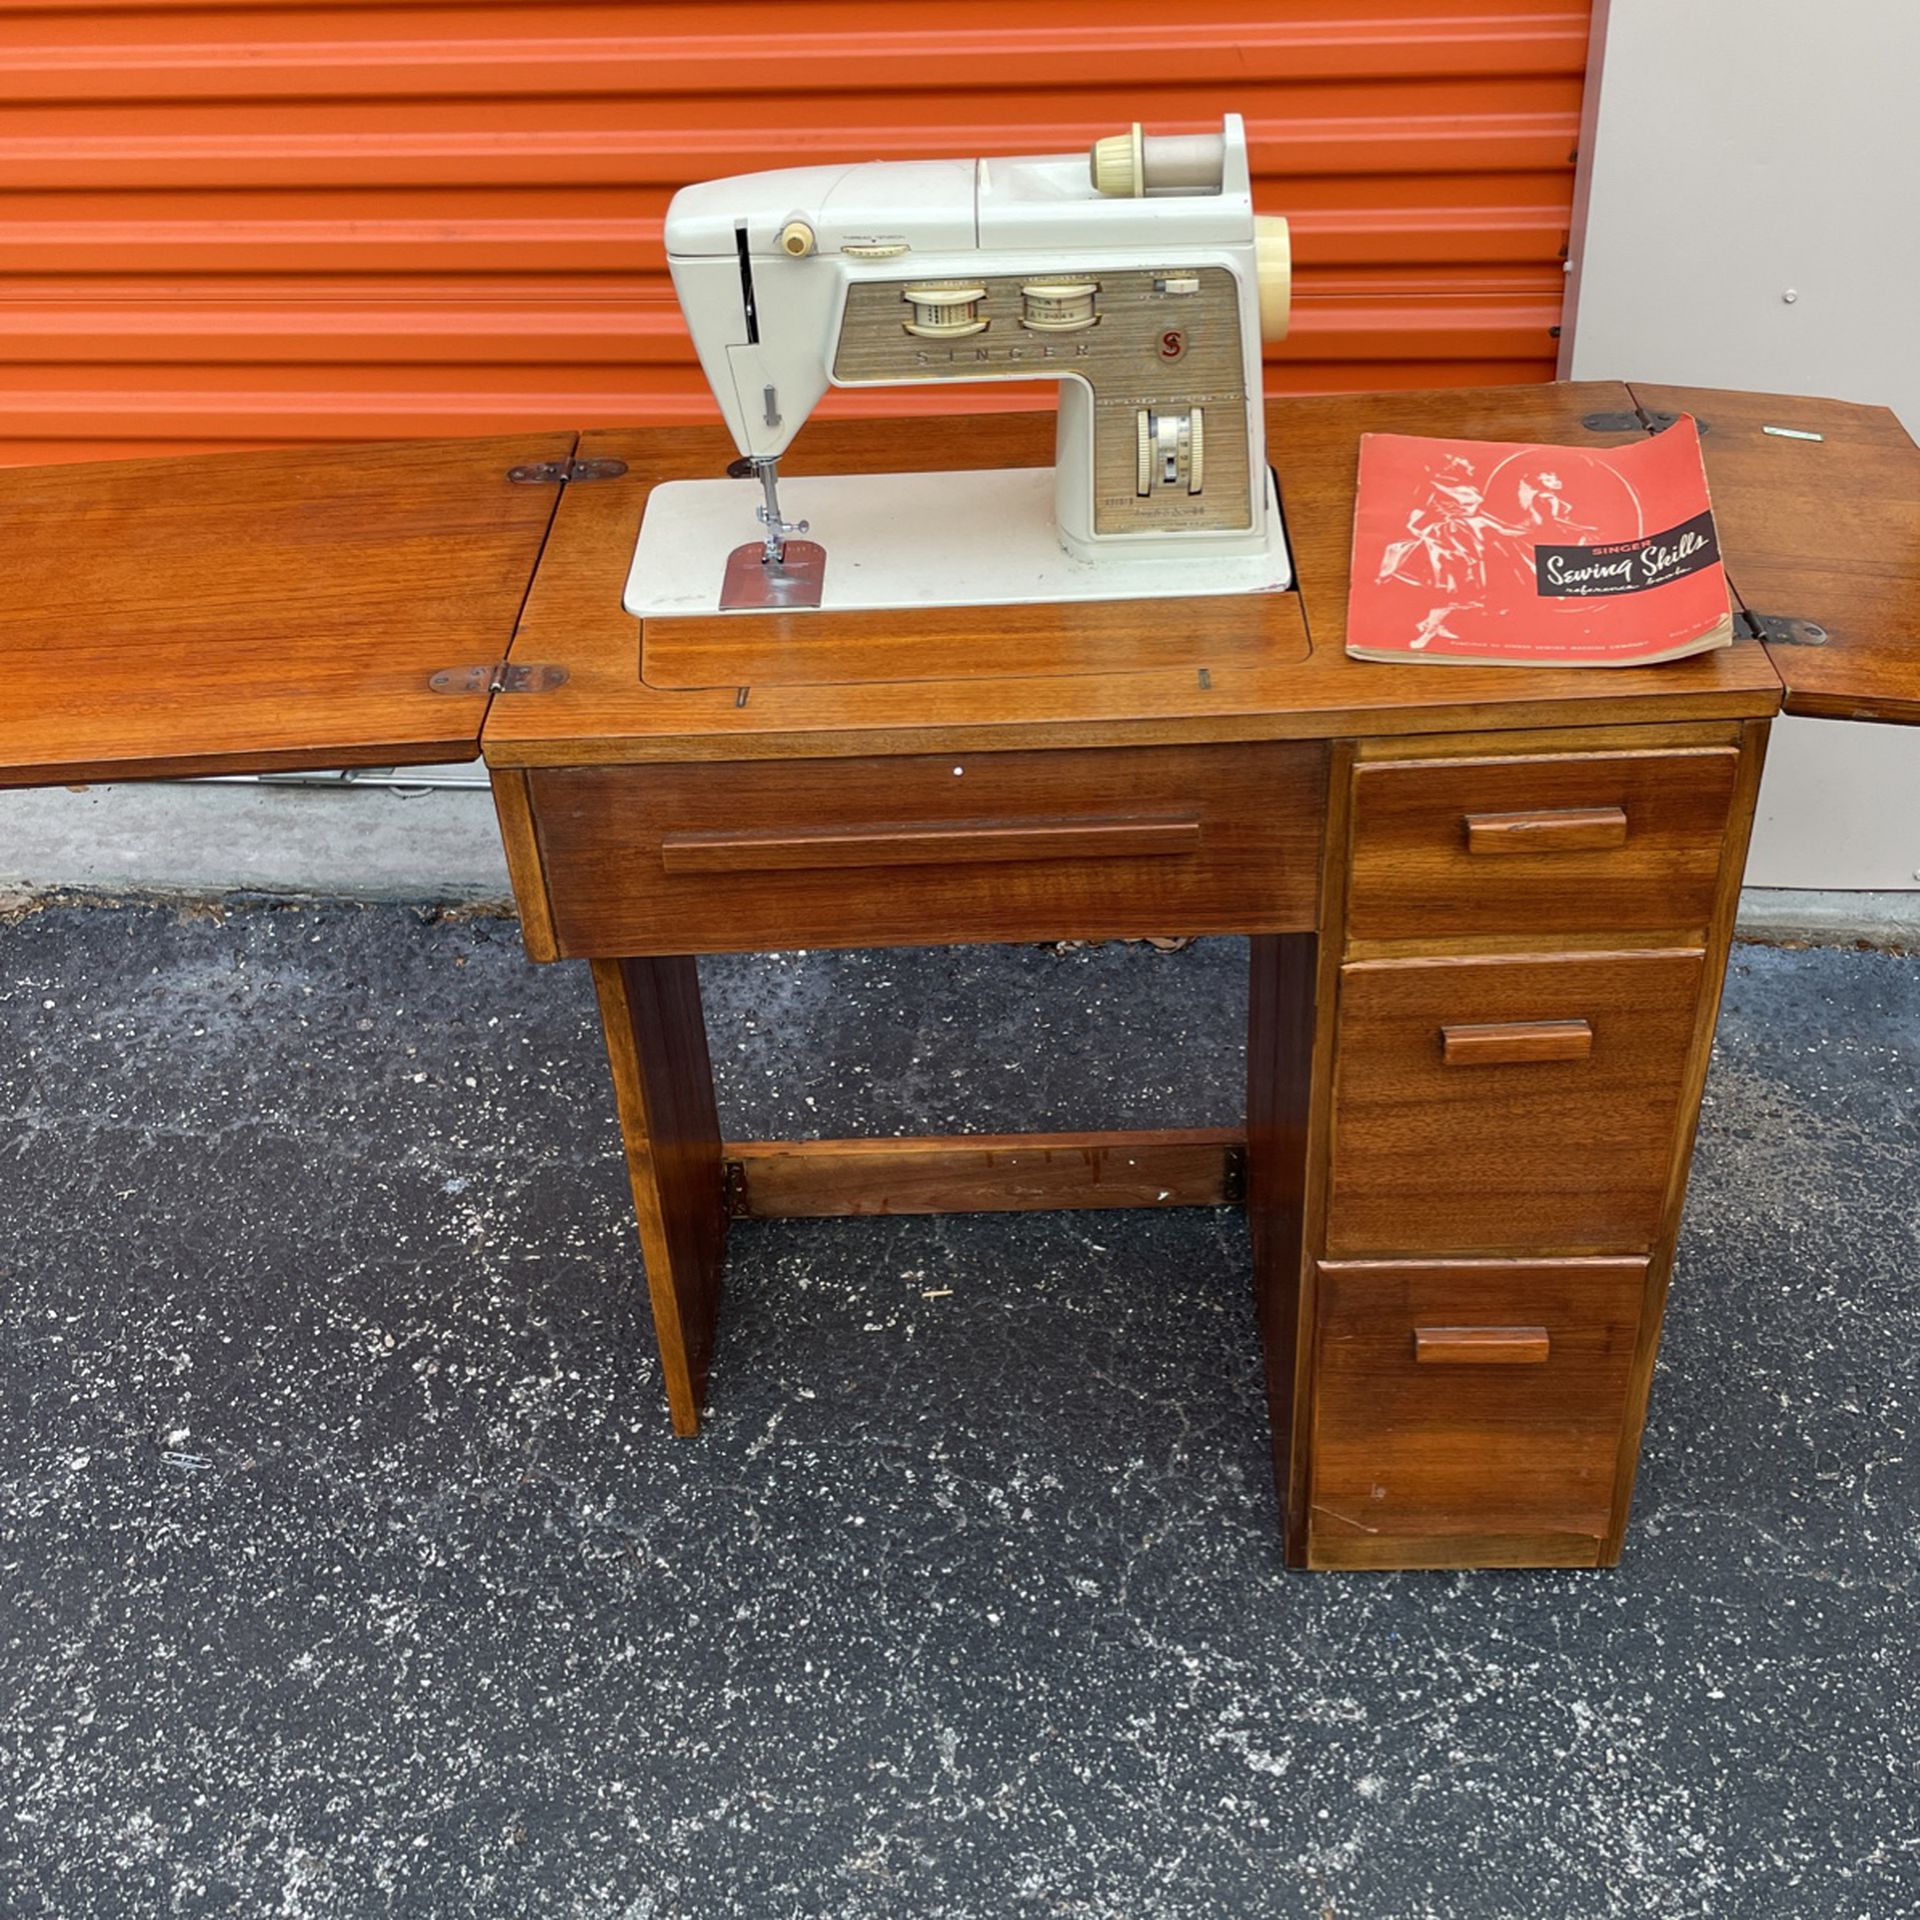 Singer 4411 Sewing Machine for Sale in Riviera Beach, FL - OfferUp